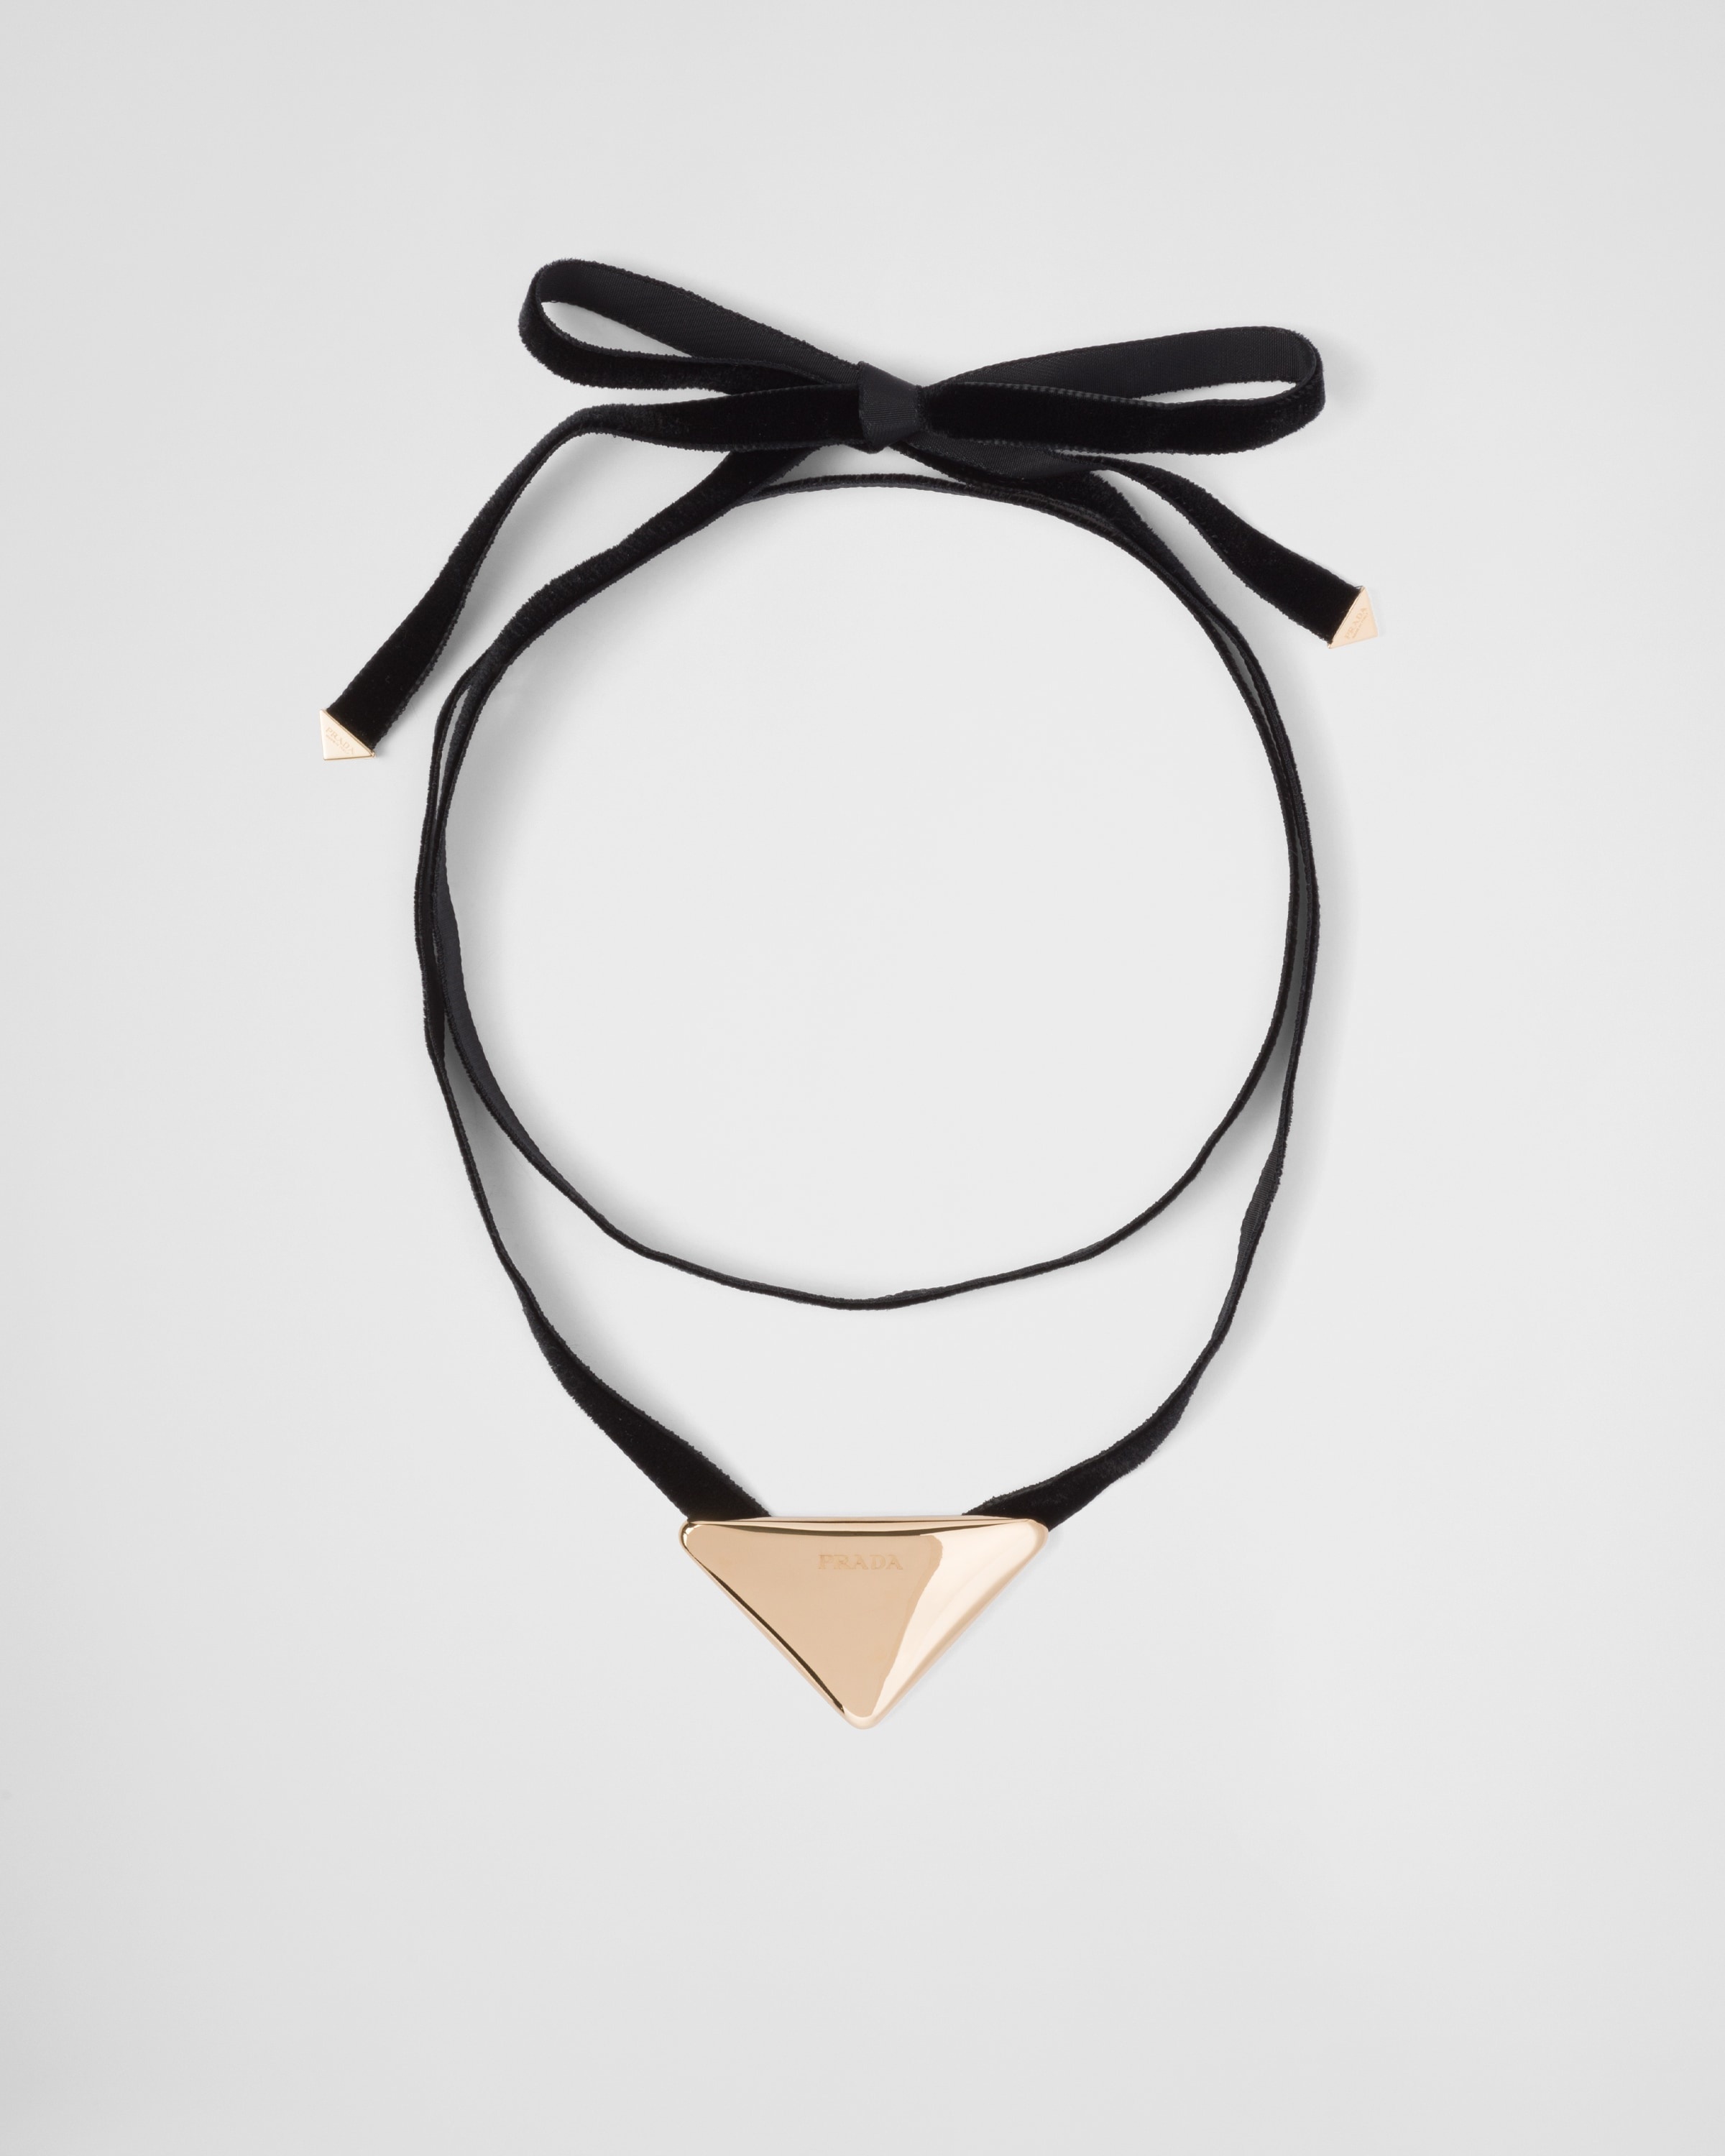 Prada, Jewelry, Prada 9s Logo Plaque Choker Necklace